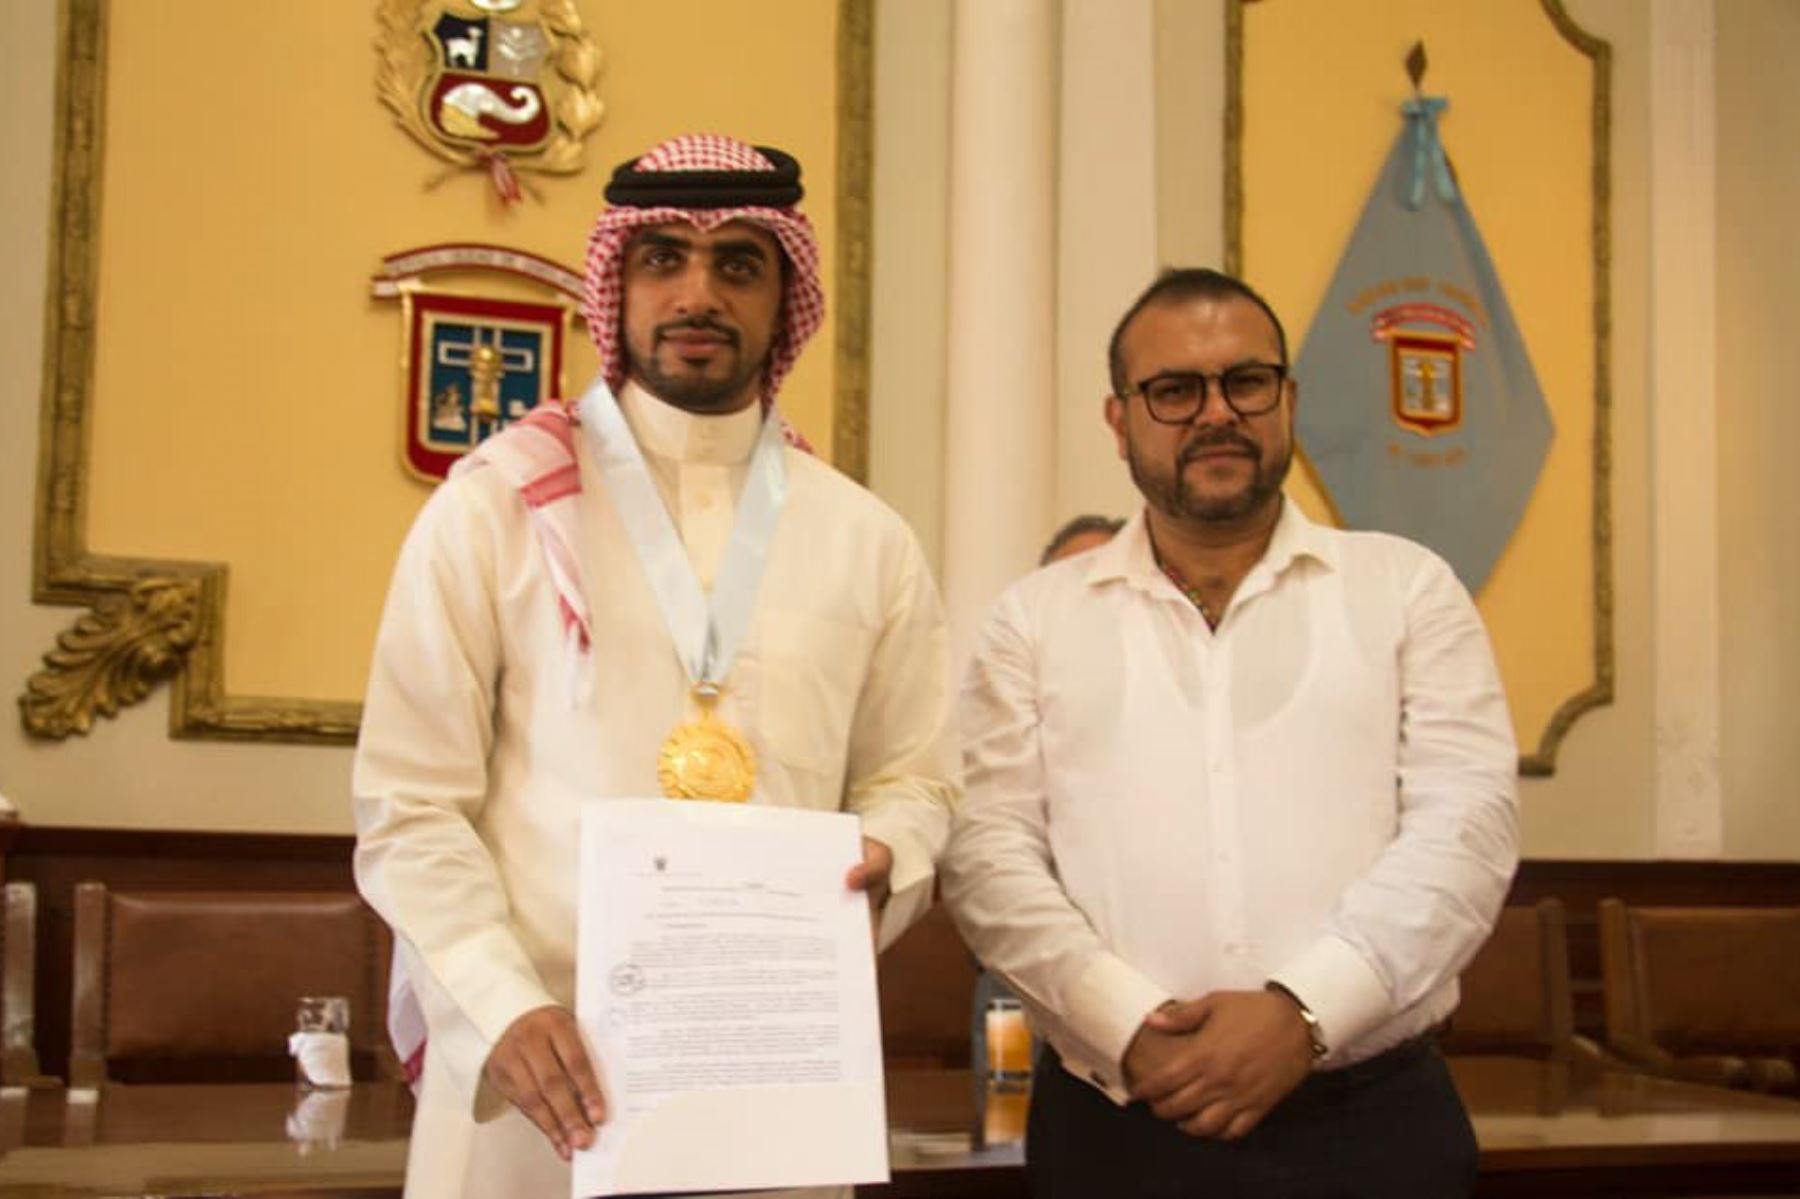 El empresario árabe Yaqoob Mubarak recibió una resolución de reconocimiento y la Medalla de la Ciudad de Chiclayo.